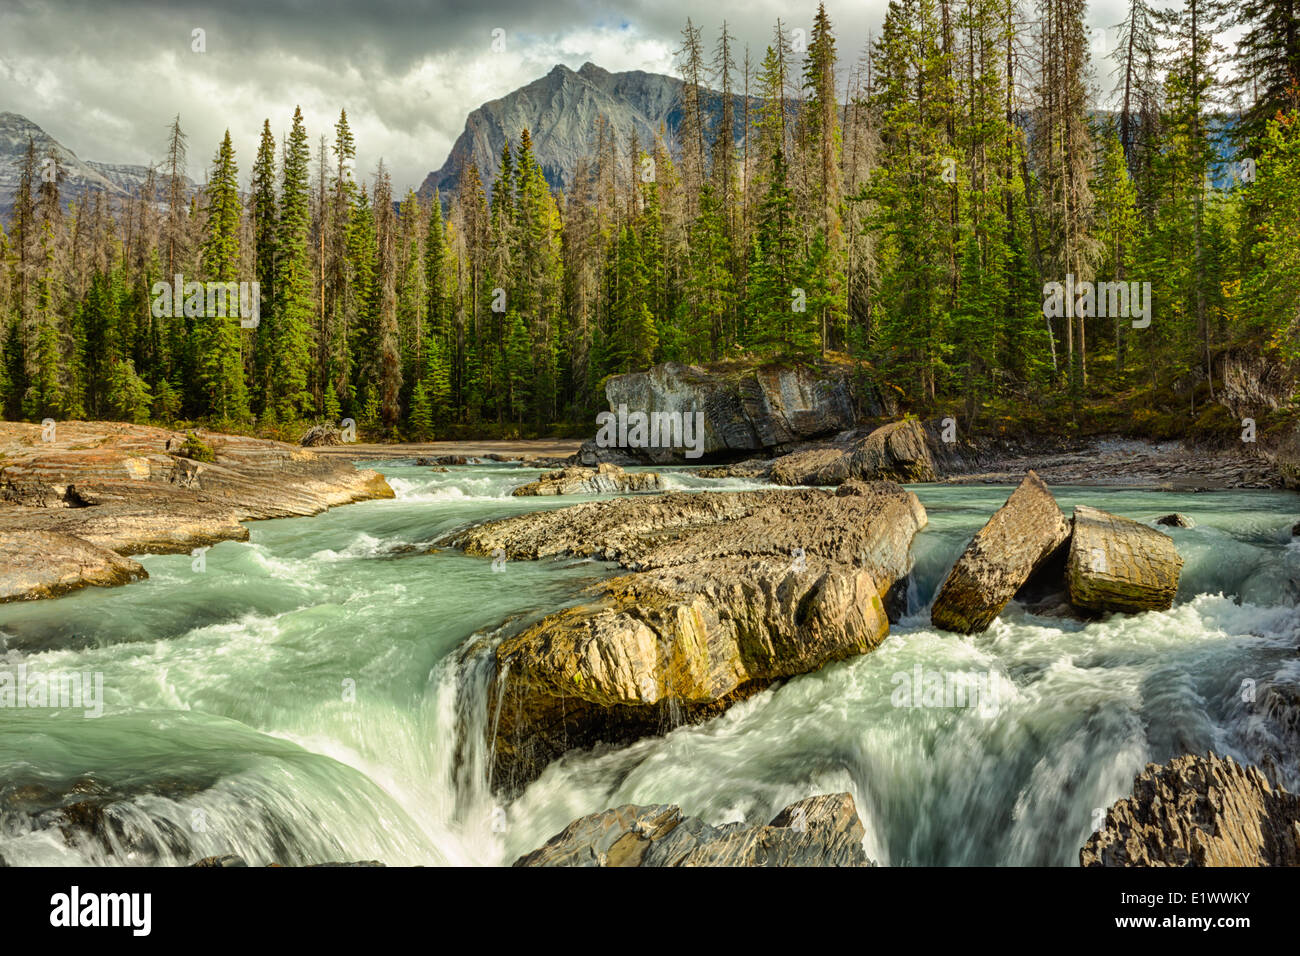 El Puente Natural, el Kicking Horse River, el Parque Nacional Yoho, British Columbia, Canadá Foto de stock